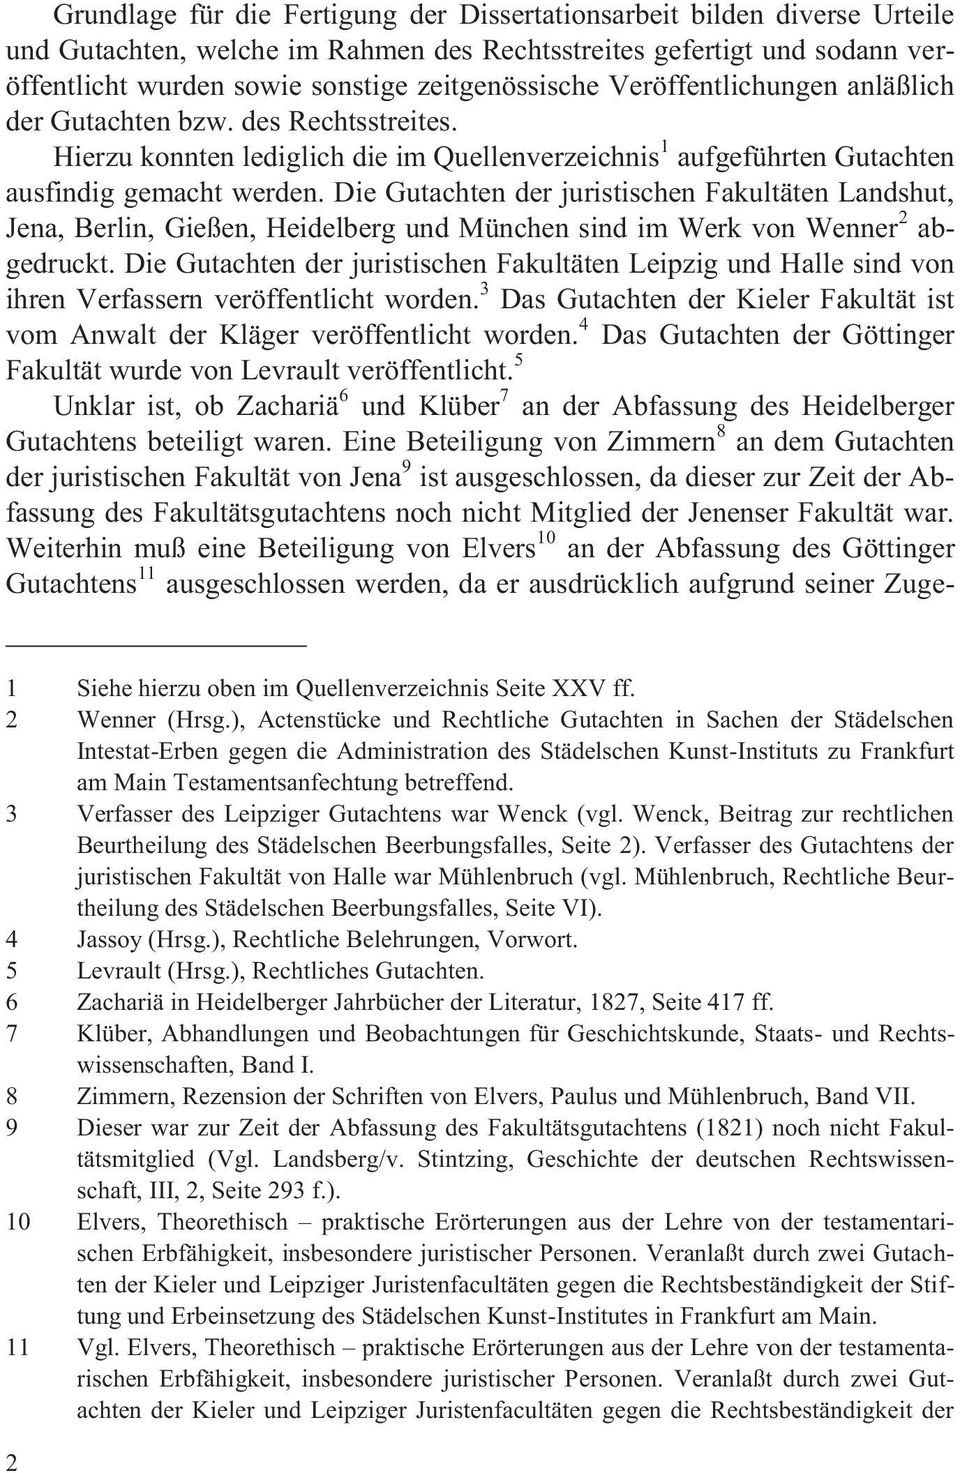 Die Gutachten der juristischen Fakultäten Landshut, Jena, Berlin, Gießen, Heidelberg und München sind im Werk von Wenner 2 abgedruckt.